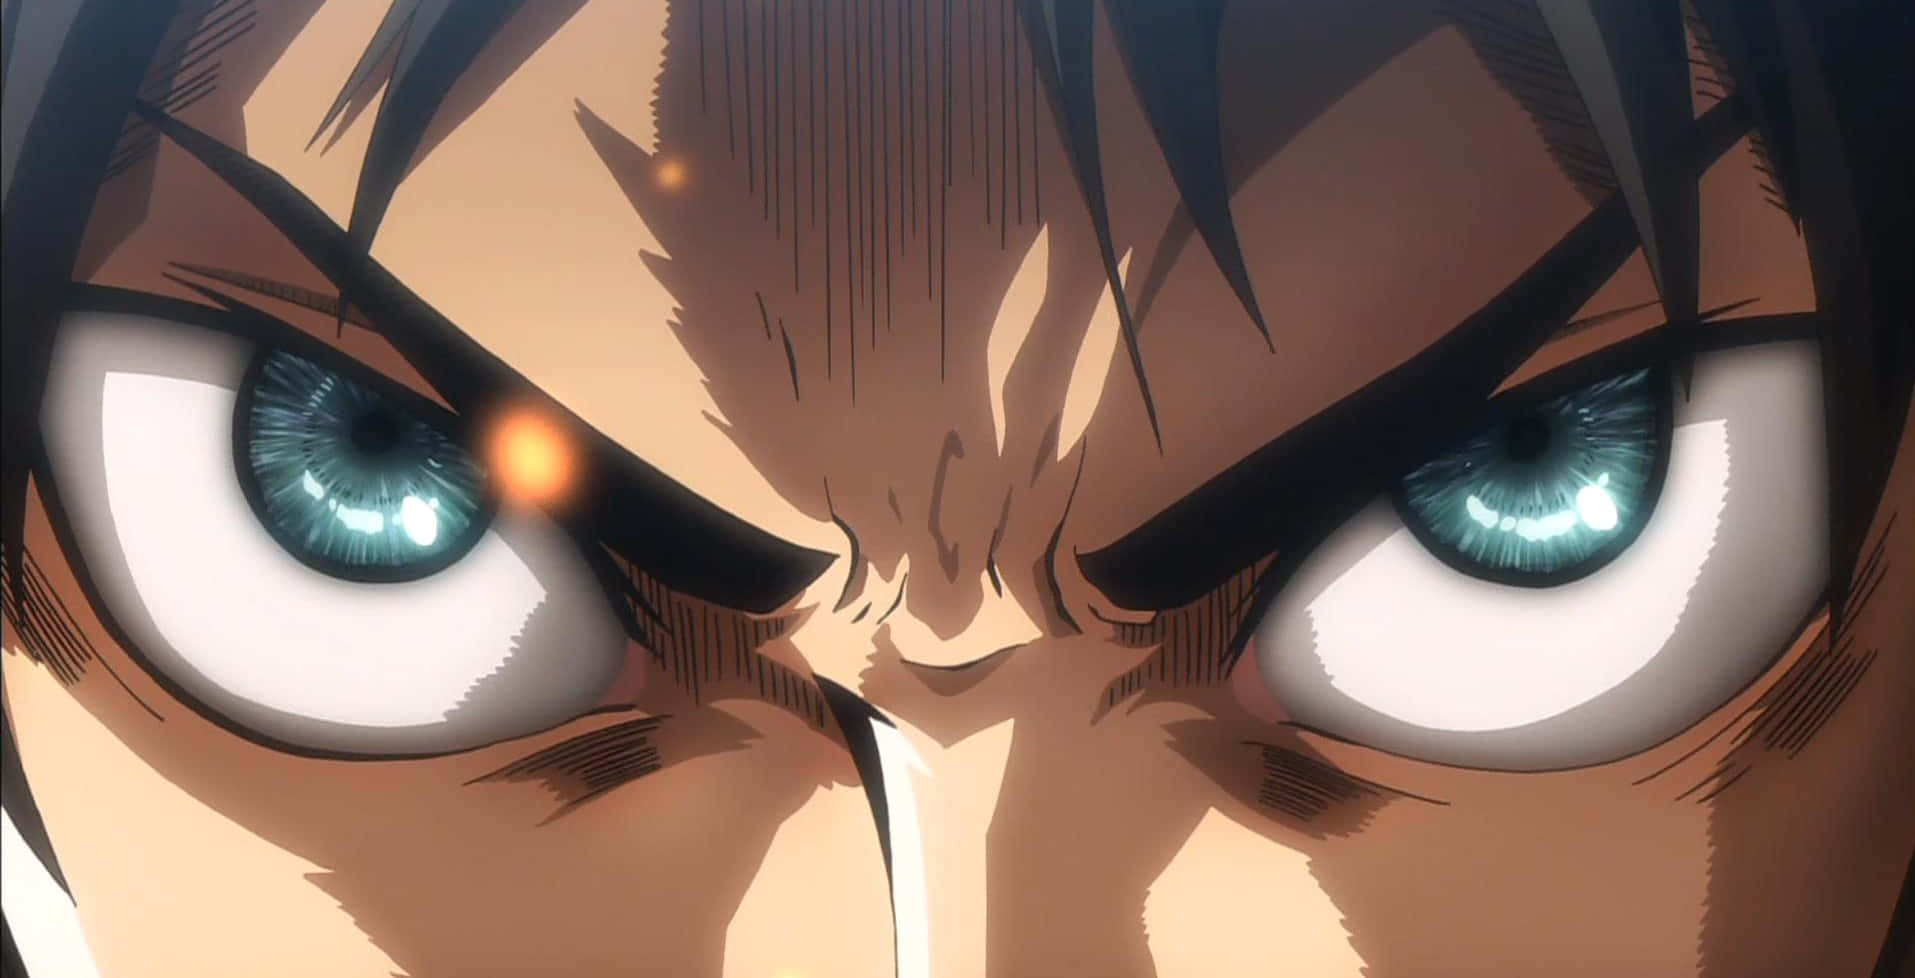 angry manga eyes